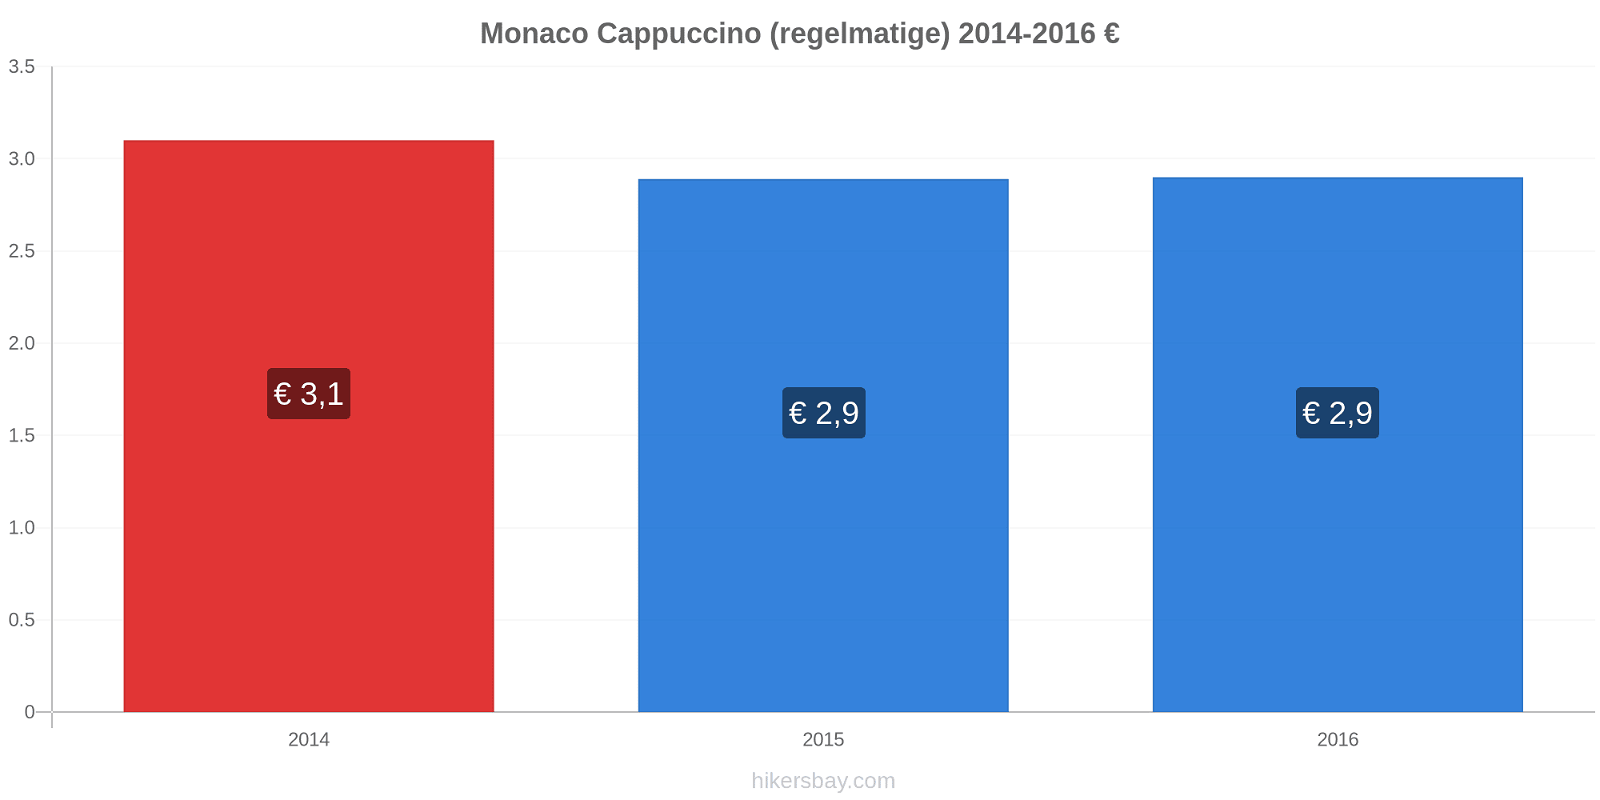 Monaco prijswijzigingen Cappuccino (regelmatige) hikersbay.com